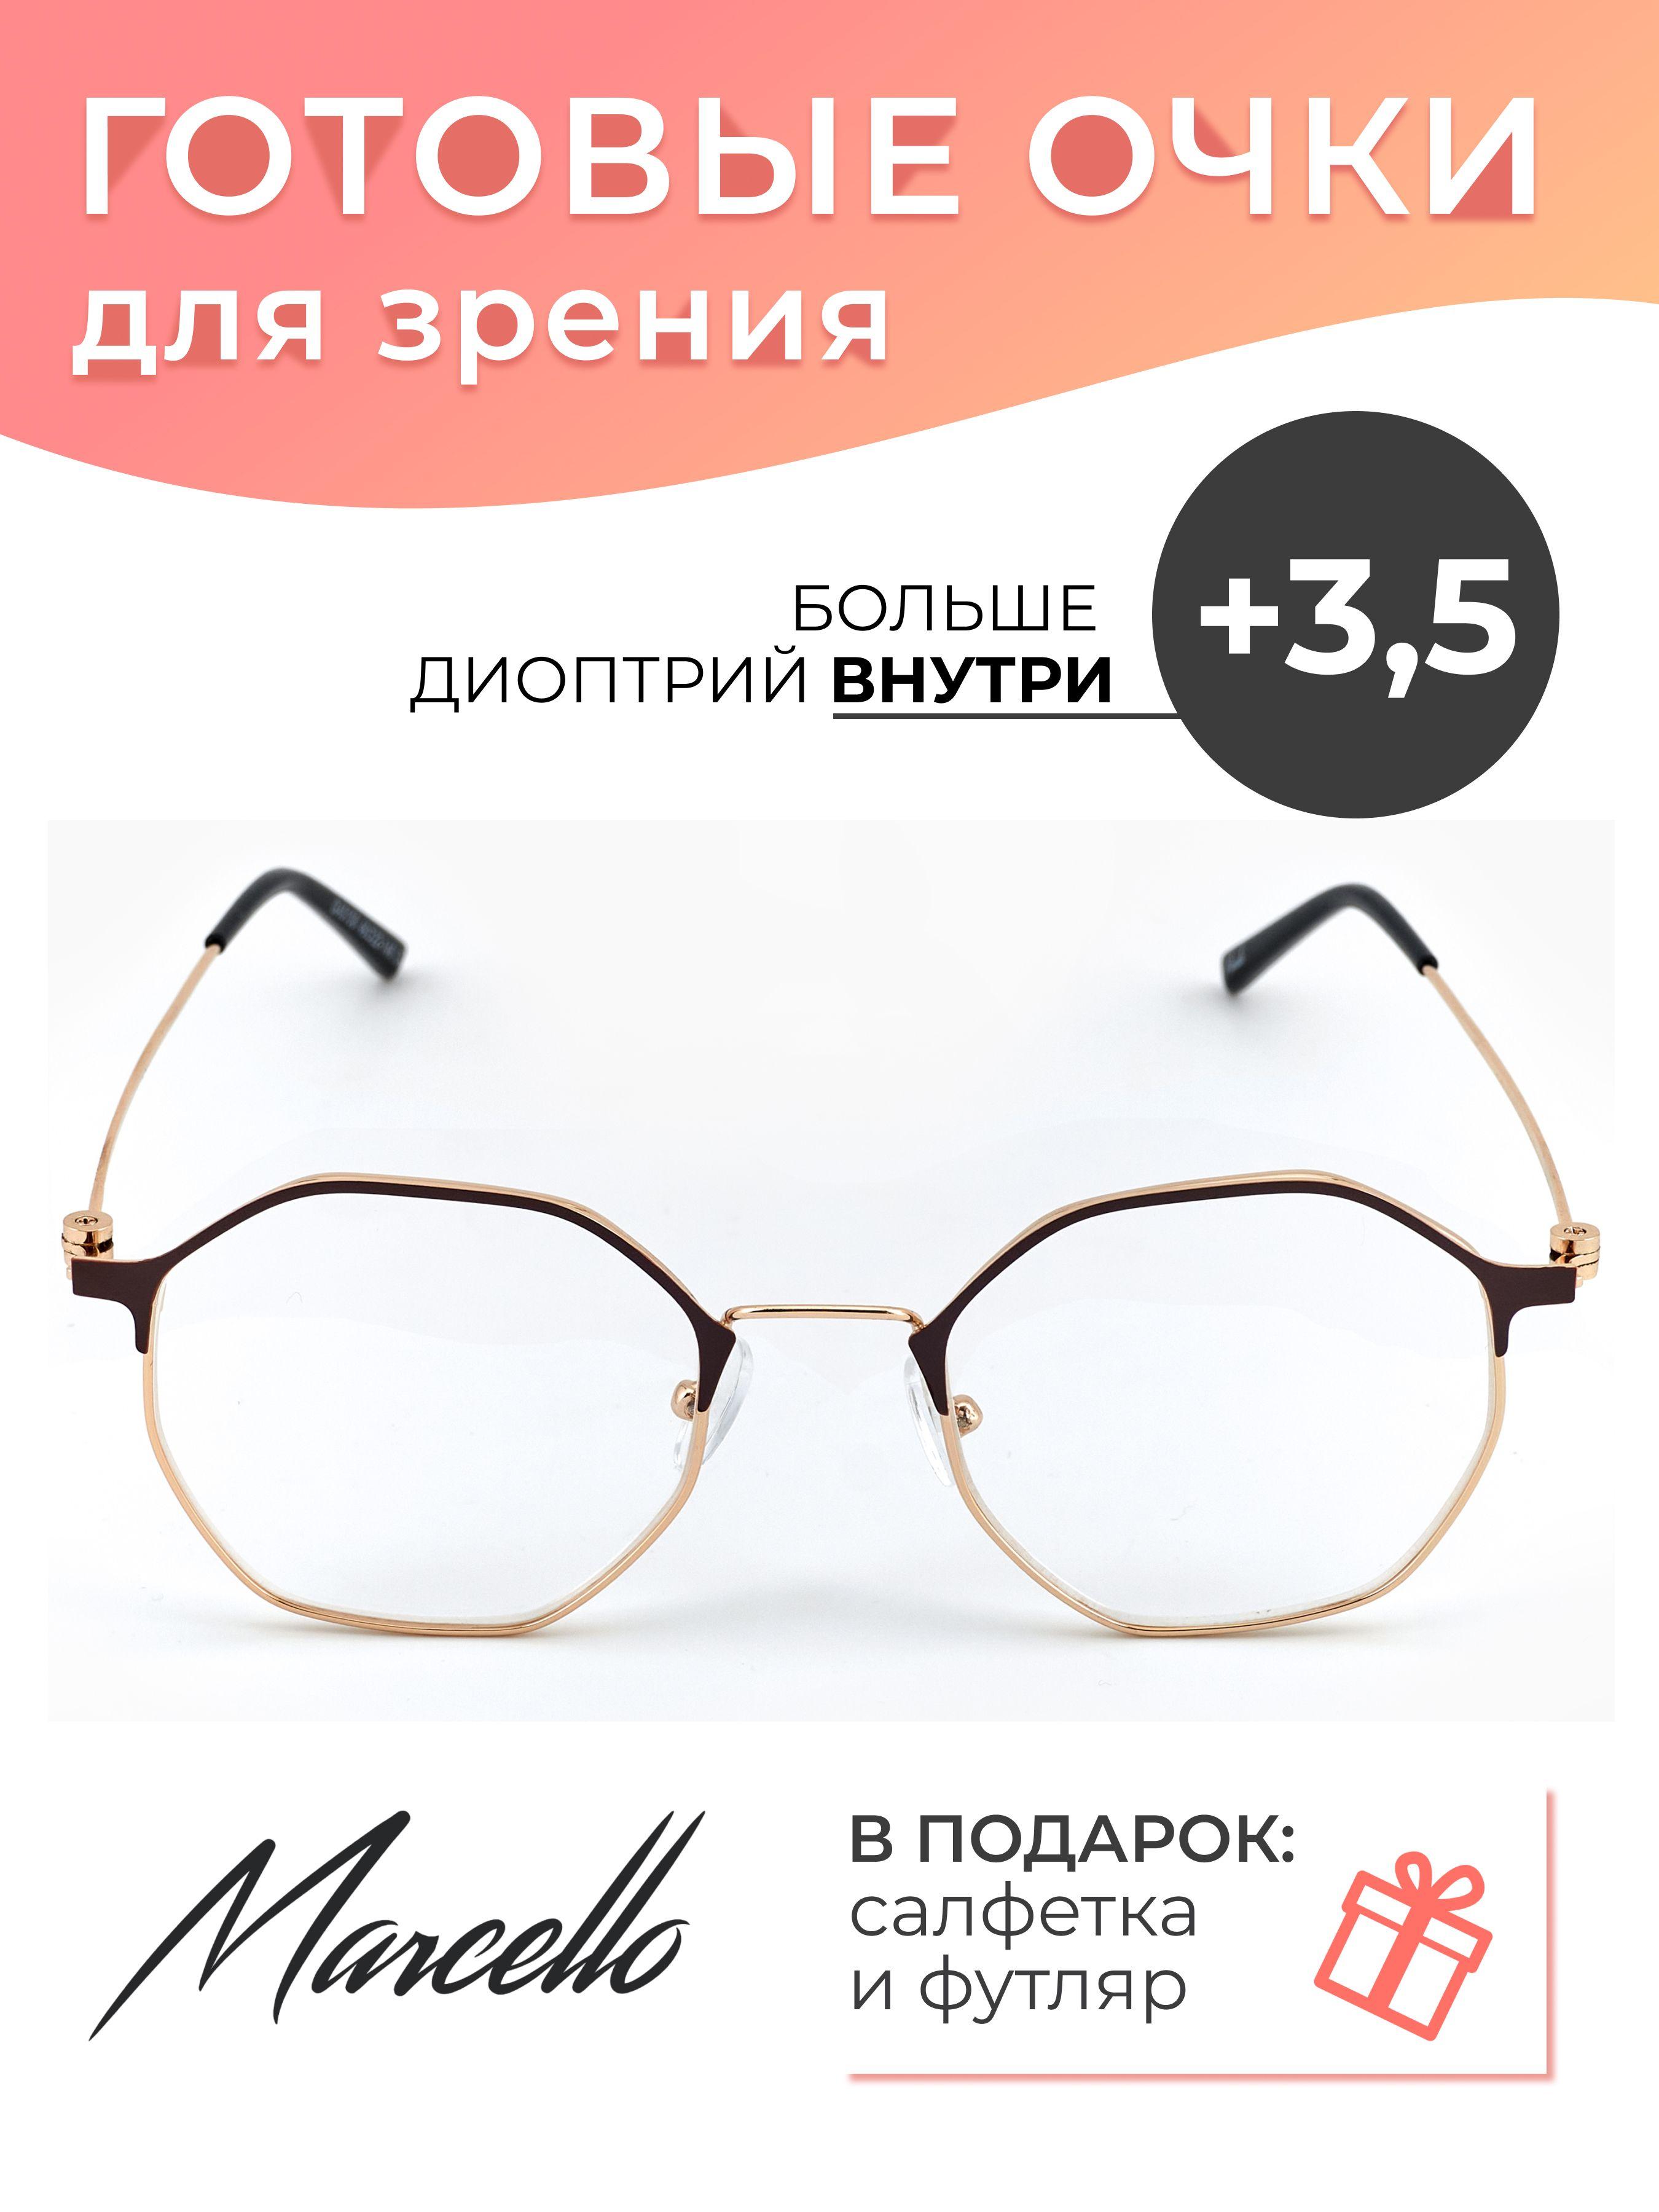 Marcello | Готовые очки для зрения корригирующие Marcello GA0108 C4 с диоптриями +3.5 для чтения на плюс, очки круглые, очки металлические, очки в футляре.